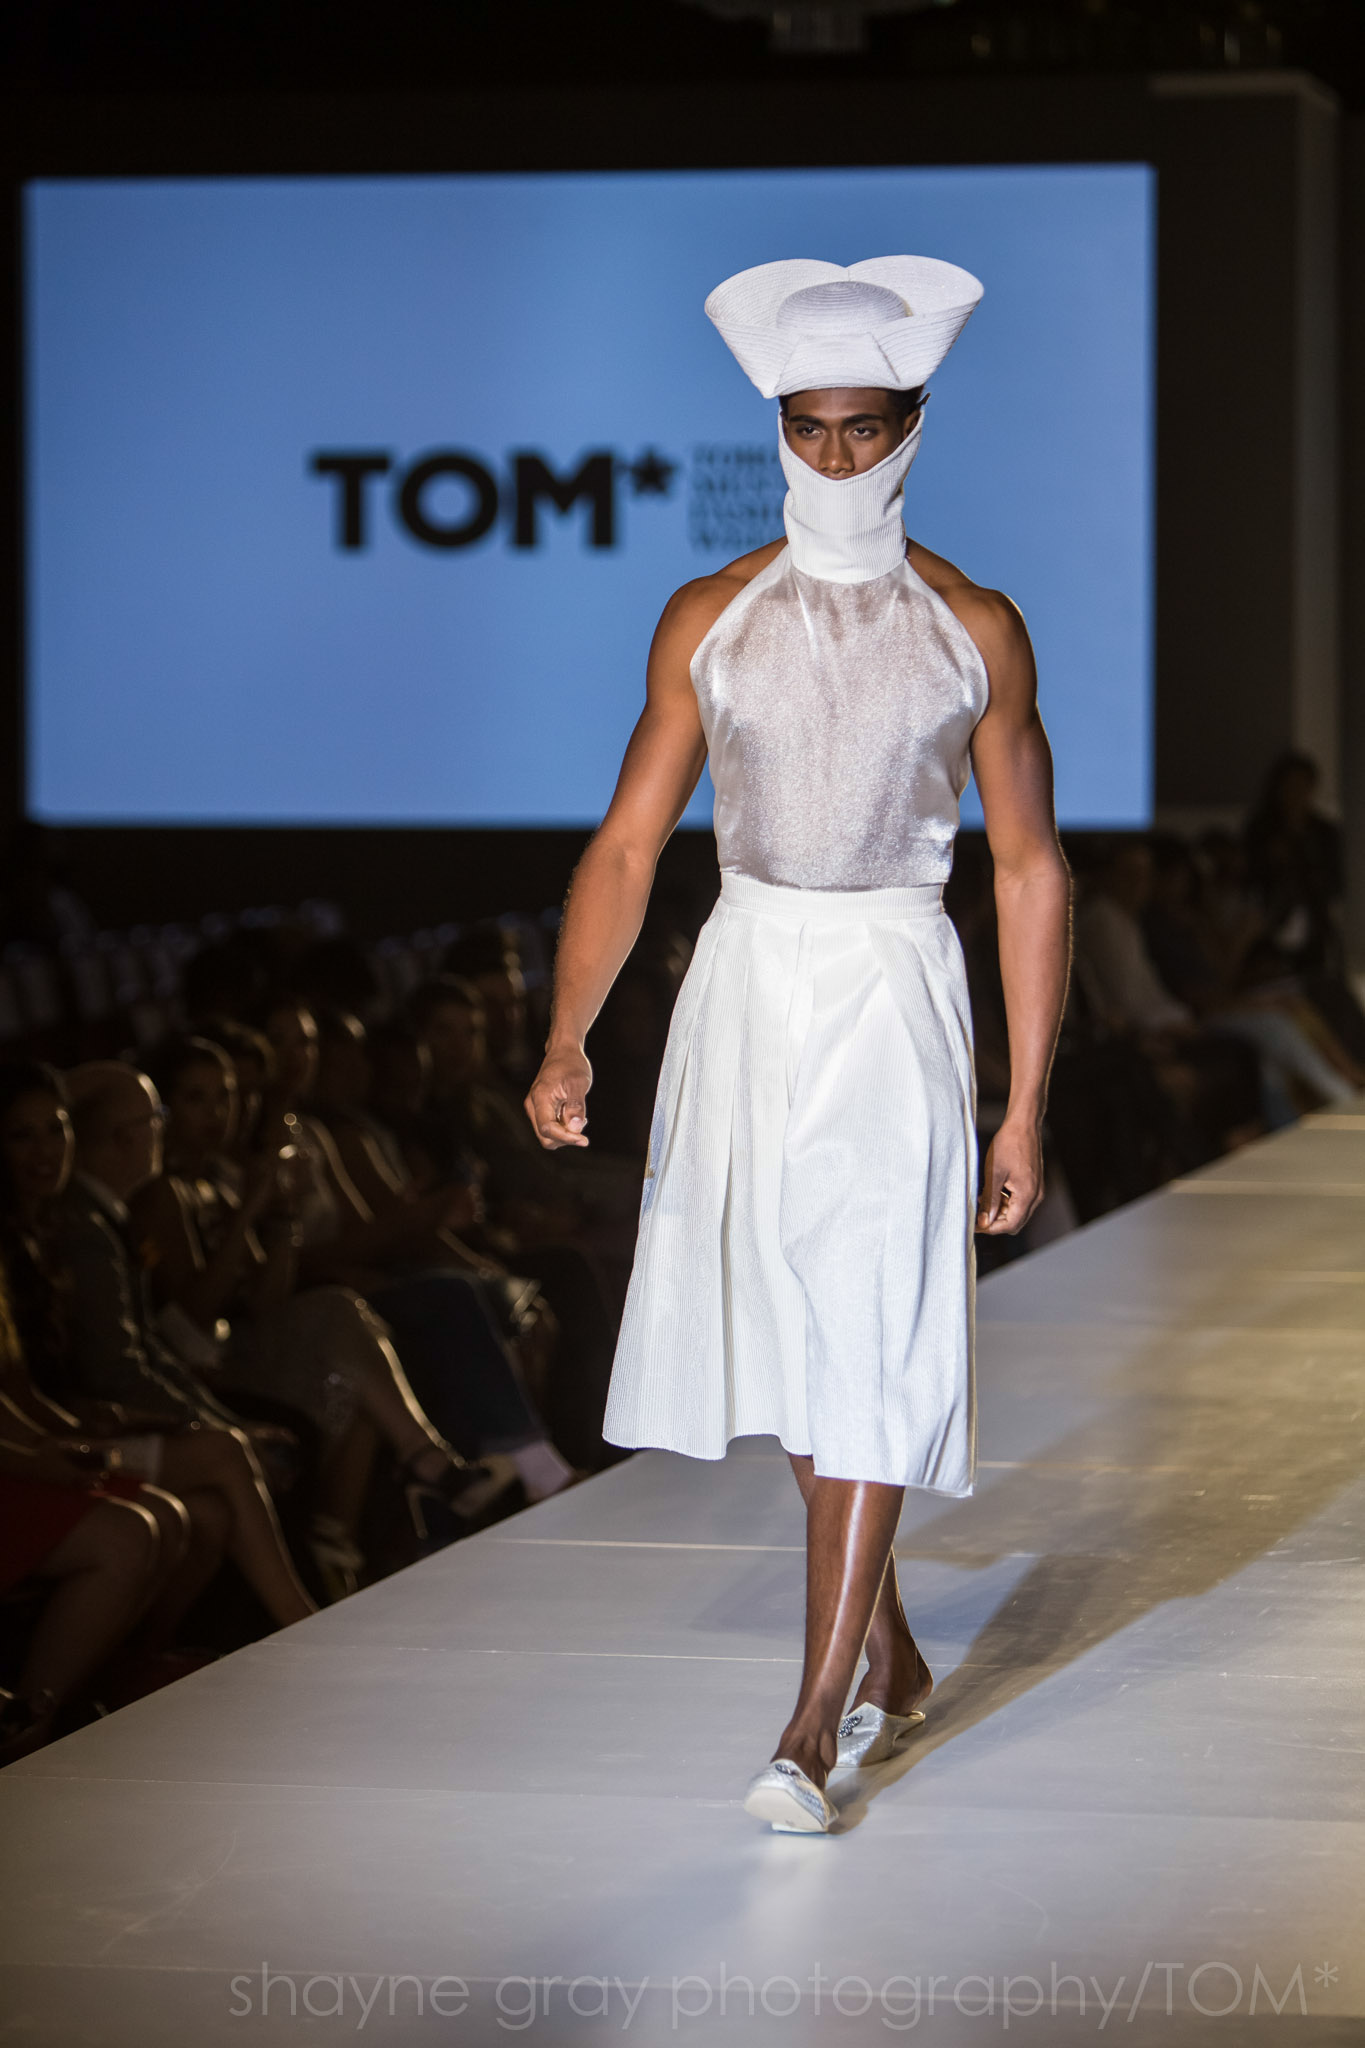 Shayne-Gray-Toronto-men's-fashion_week-TOM-l'uomo-strano-8618.jpg